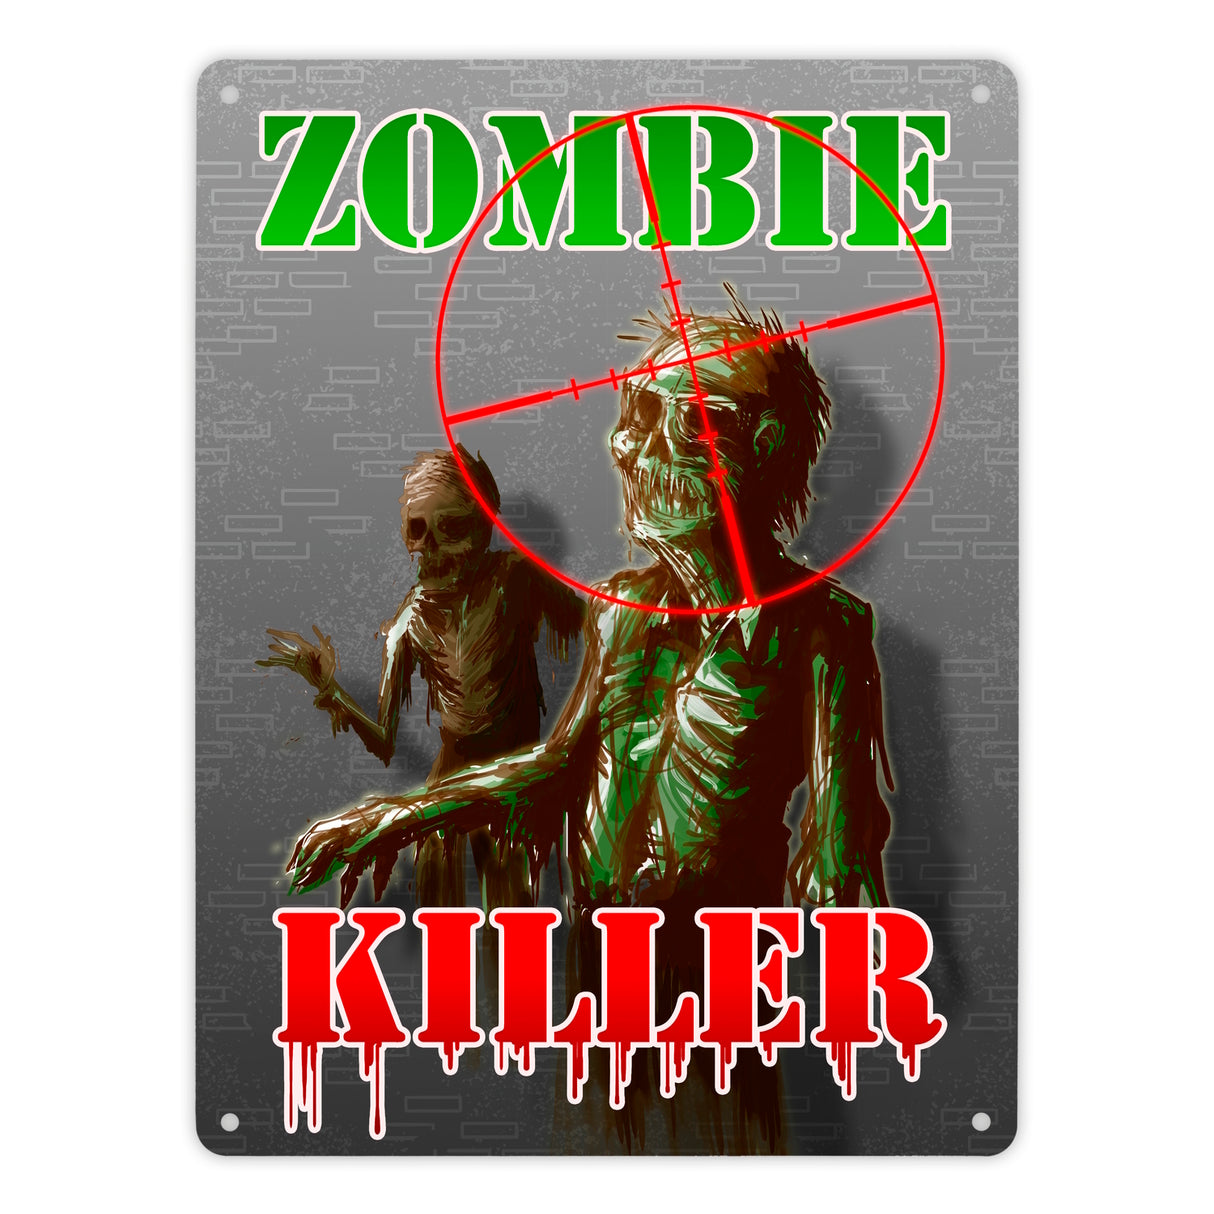 Metallschild Zombie Killer mit Fadekreuz und zwei Zombies im Comic-Design